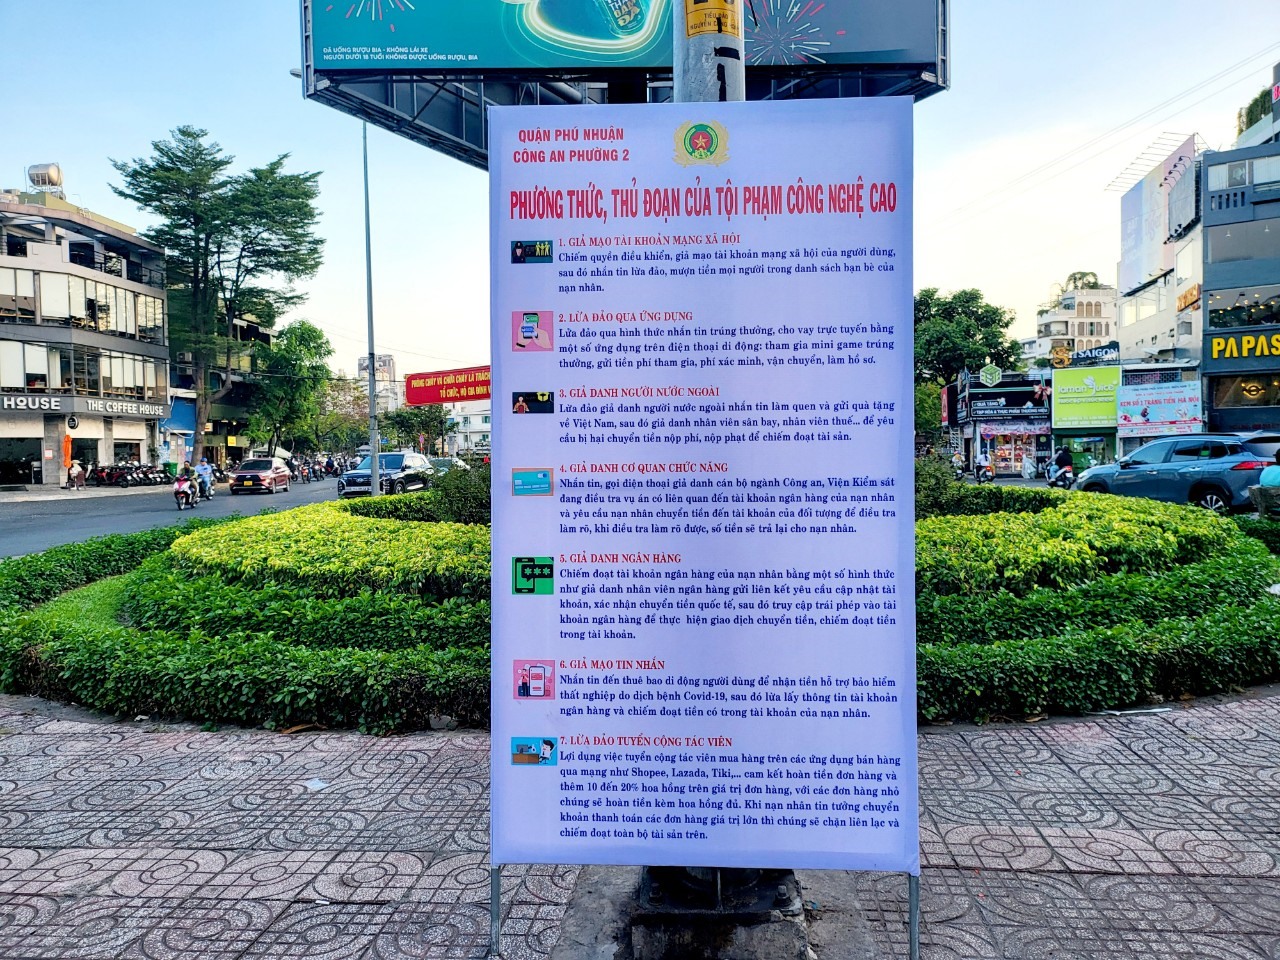 Công an Phường 2, quận Phú Nhuận (TPHCM) thông báo cảnh báo